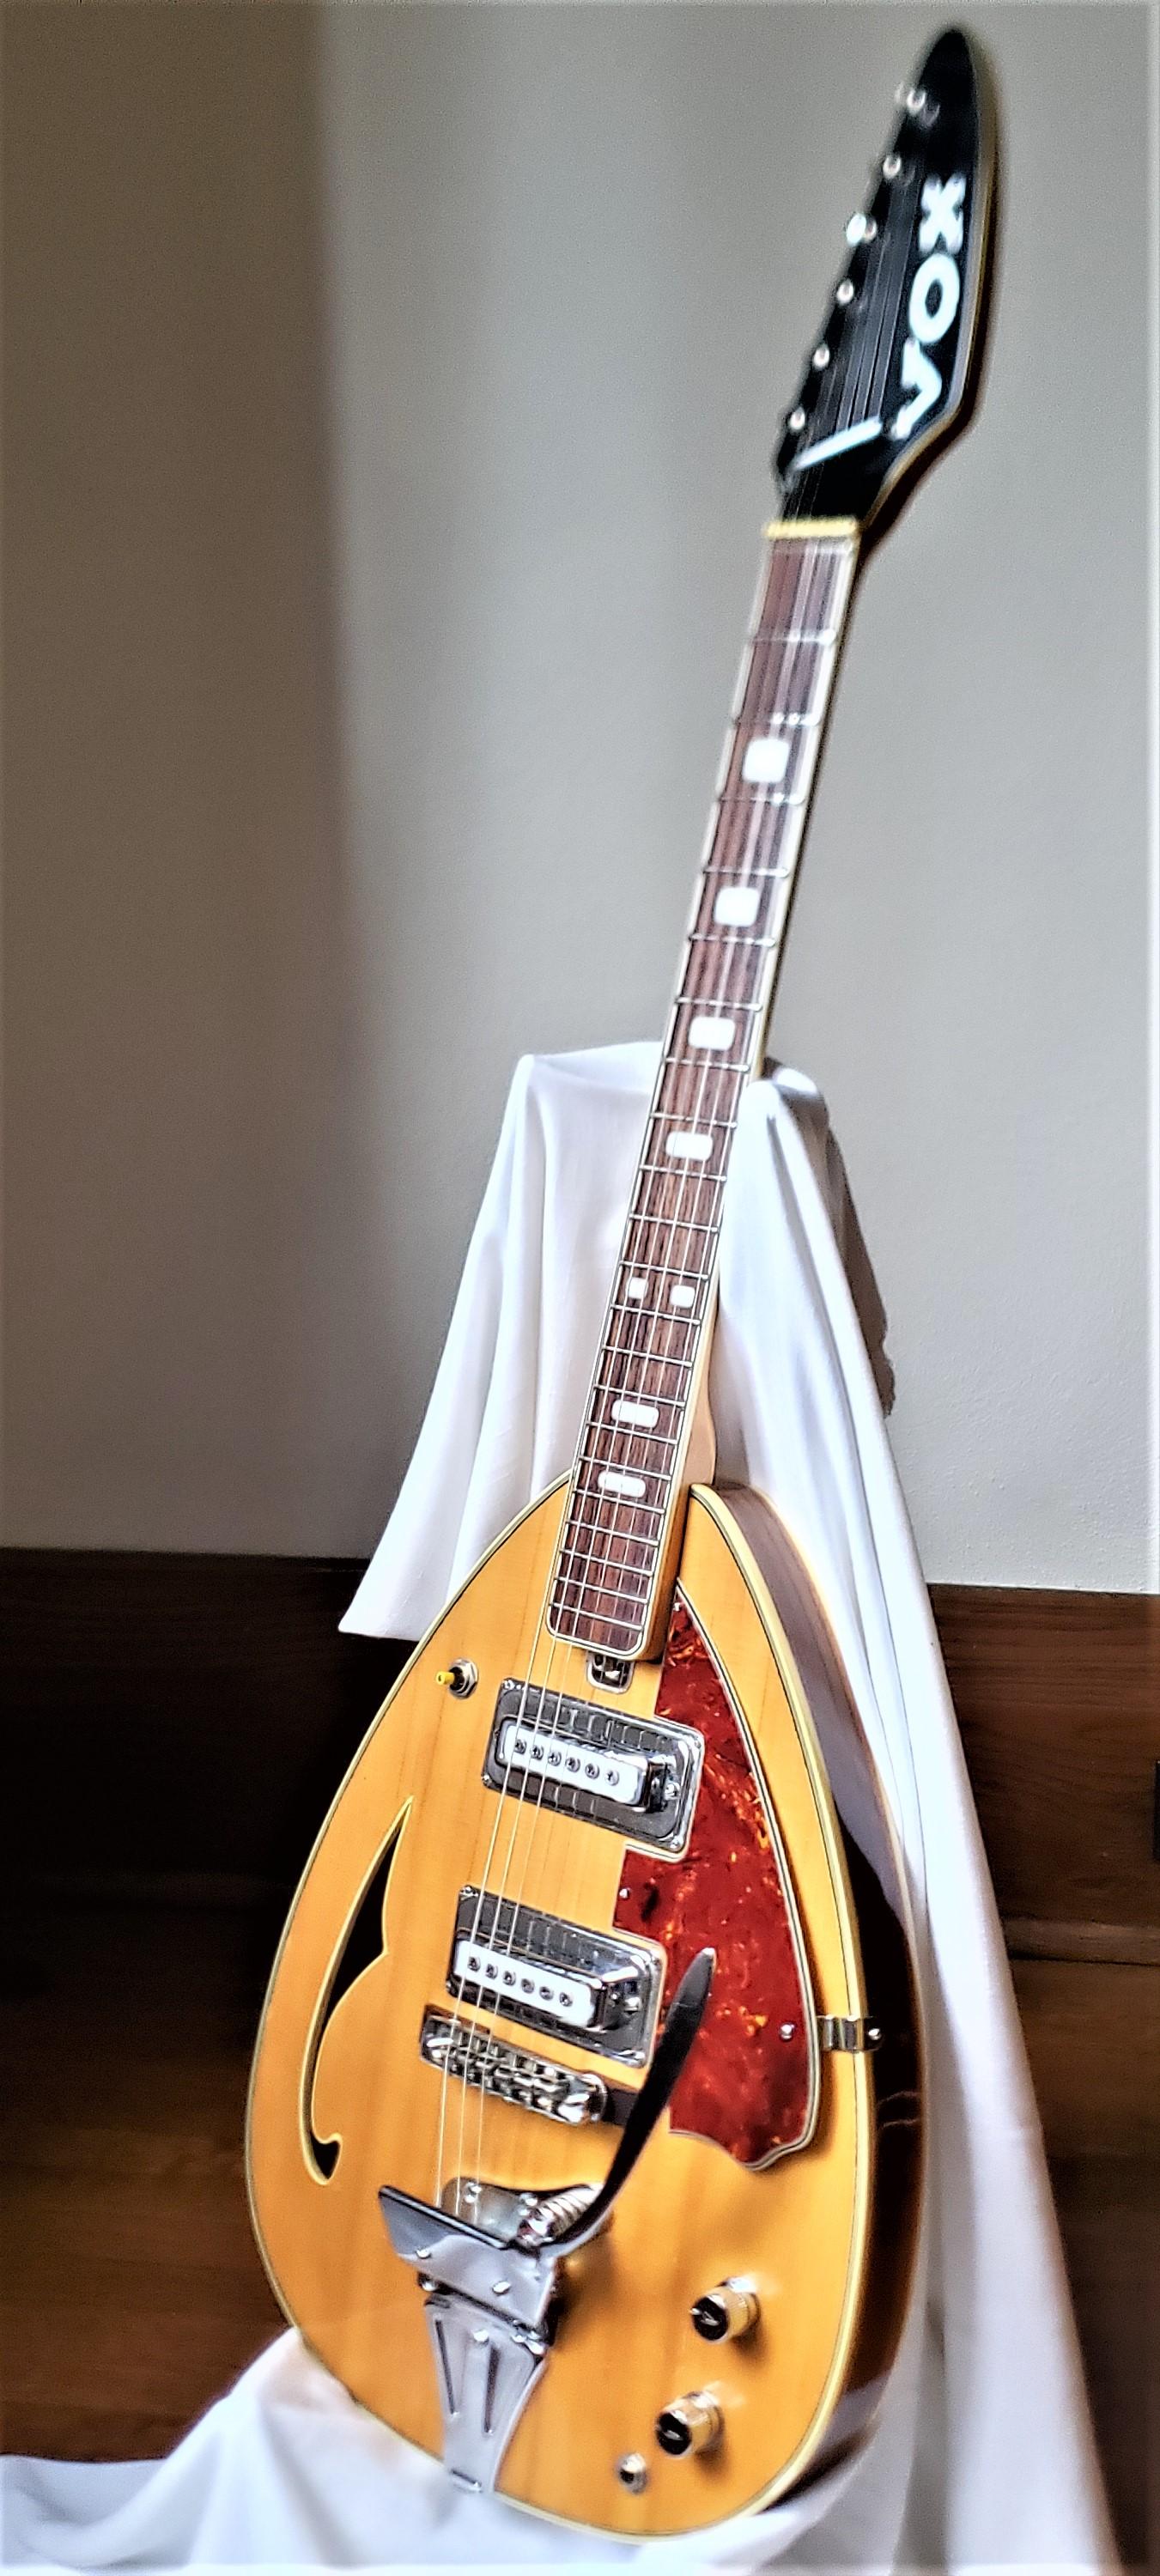 Diese Semi-Hollowbody Teardrop-Gitarre aus der Mid-Century-Ära wurde etwa 1967 von EKO in Italien für VOX hergestellt und im Stil der Zeit gefertigt. Das Modell ist nirgends auf der Gitarre angegeben, aber wir glauben, dass es sich um eine Mark VI